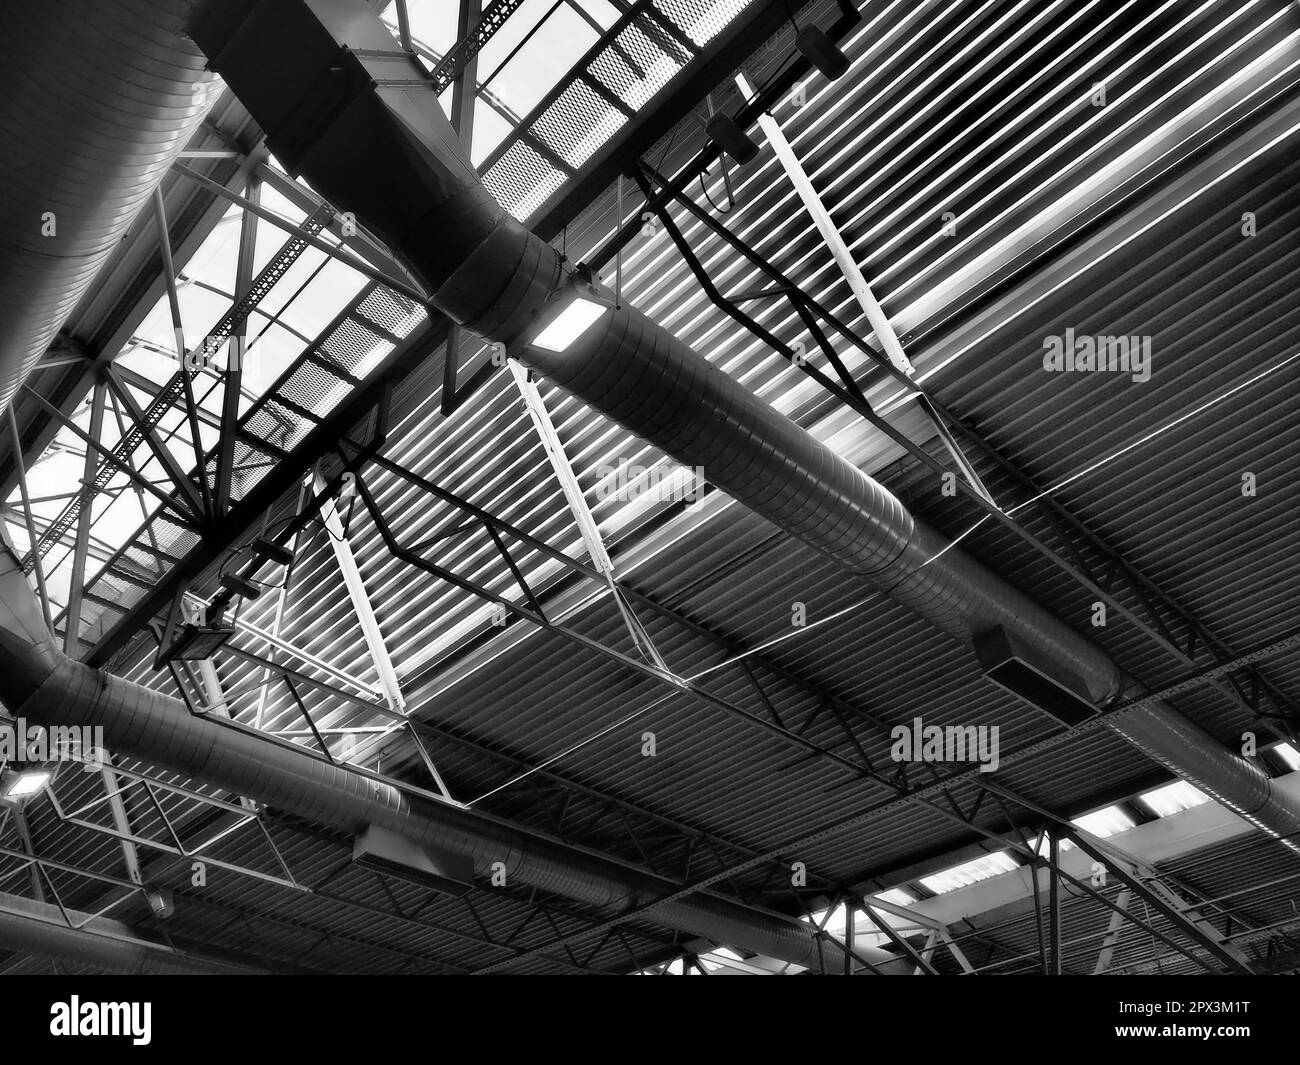 Das Dach eines Hangars, einer Produktionshalle oder einer Sporthalle. Metallkonstruktionen, Balken, Stützelemente. Lüftungsanlagen in großen Hallen und Räumen. Stockfoto